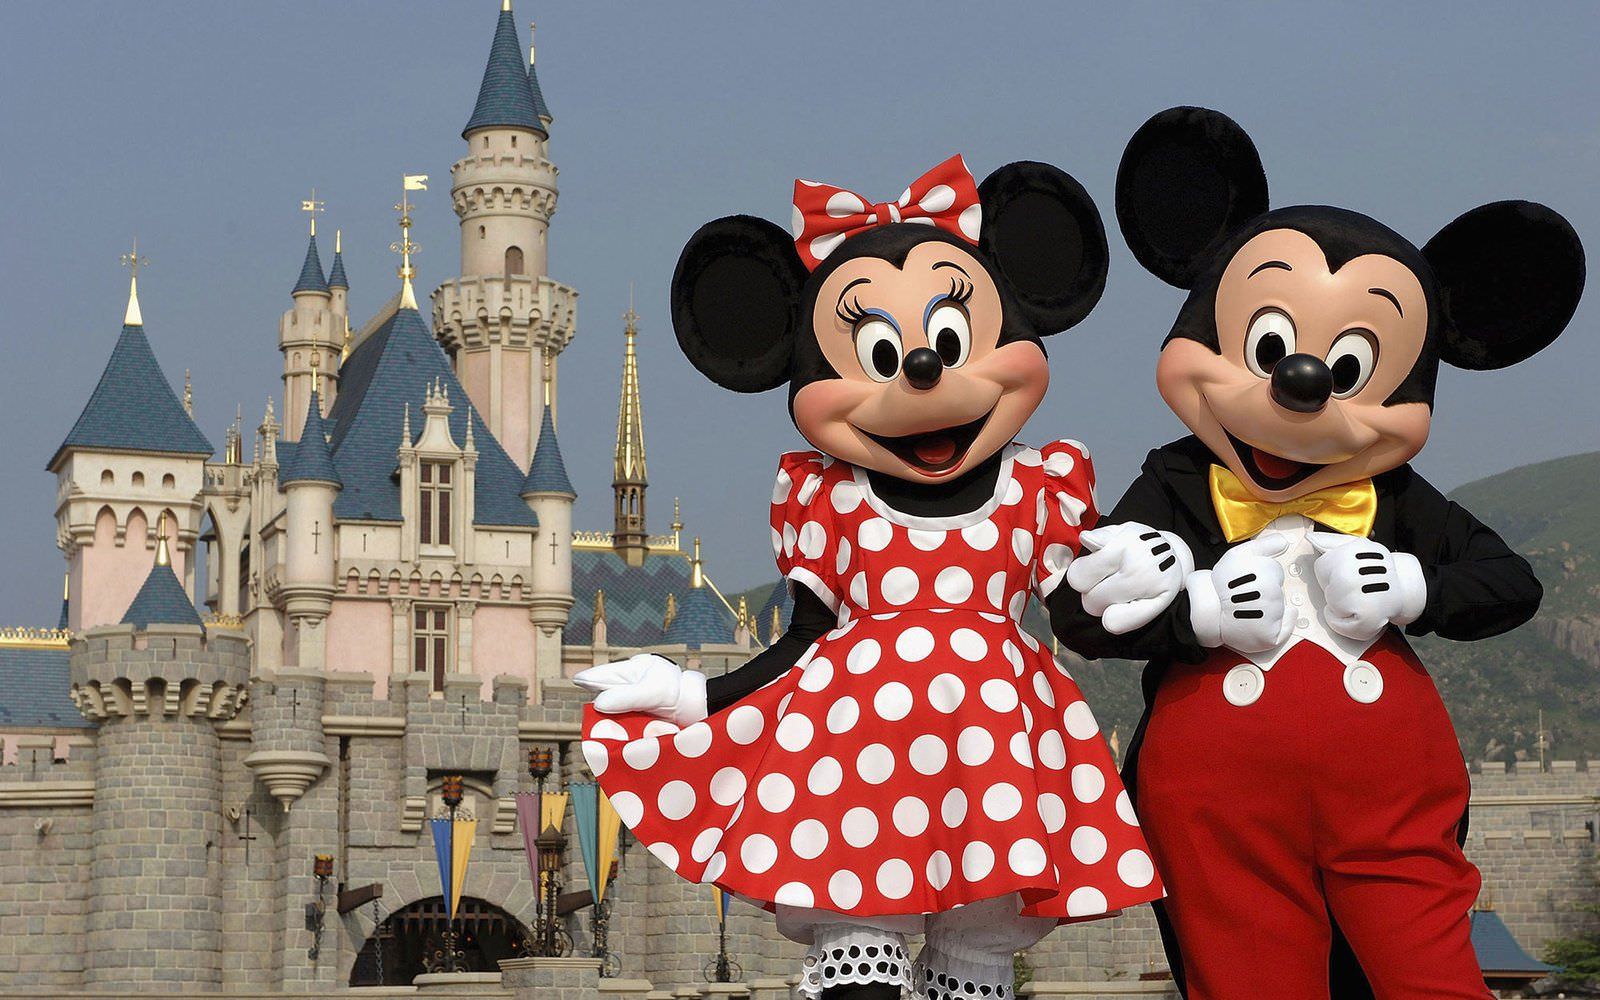 Com petições online, site conservador mira da Disney à ‘ditadura de gênero’